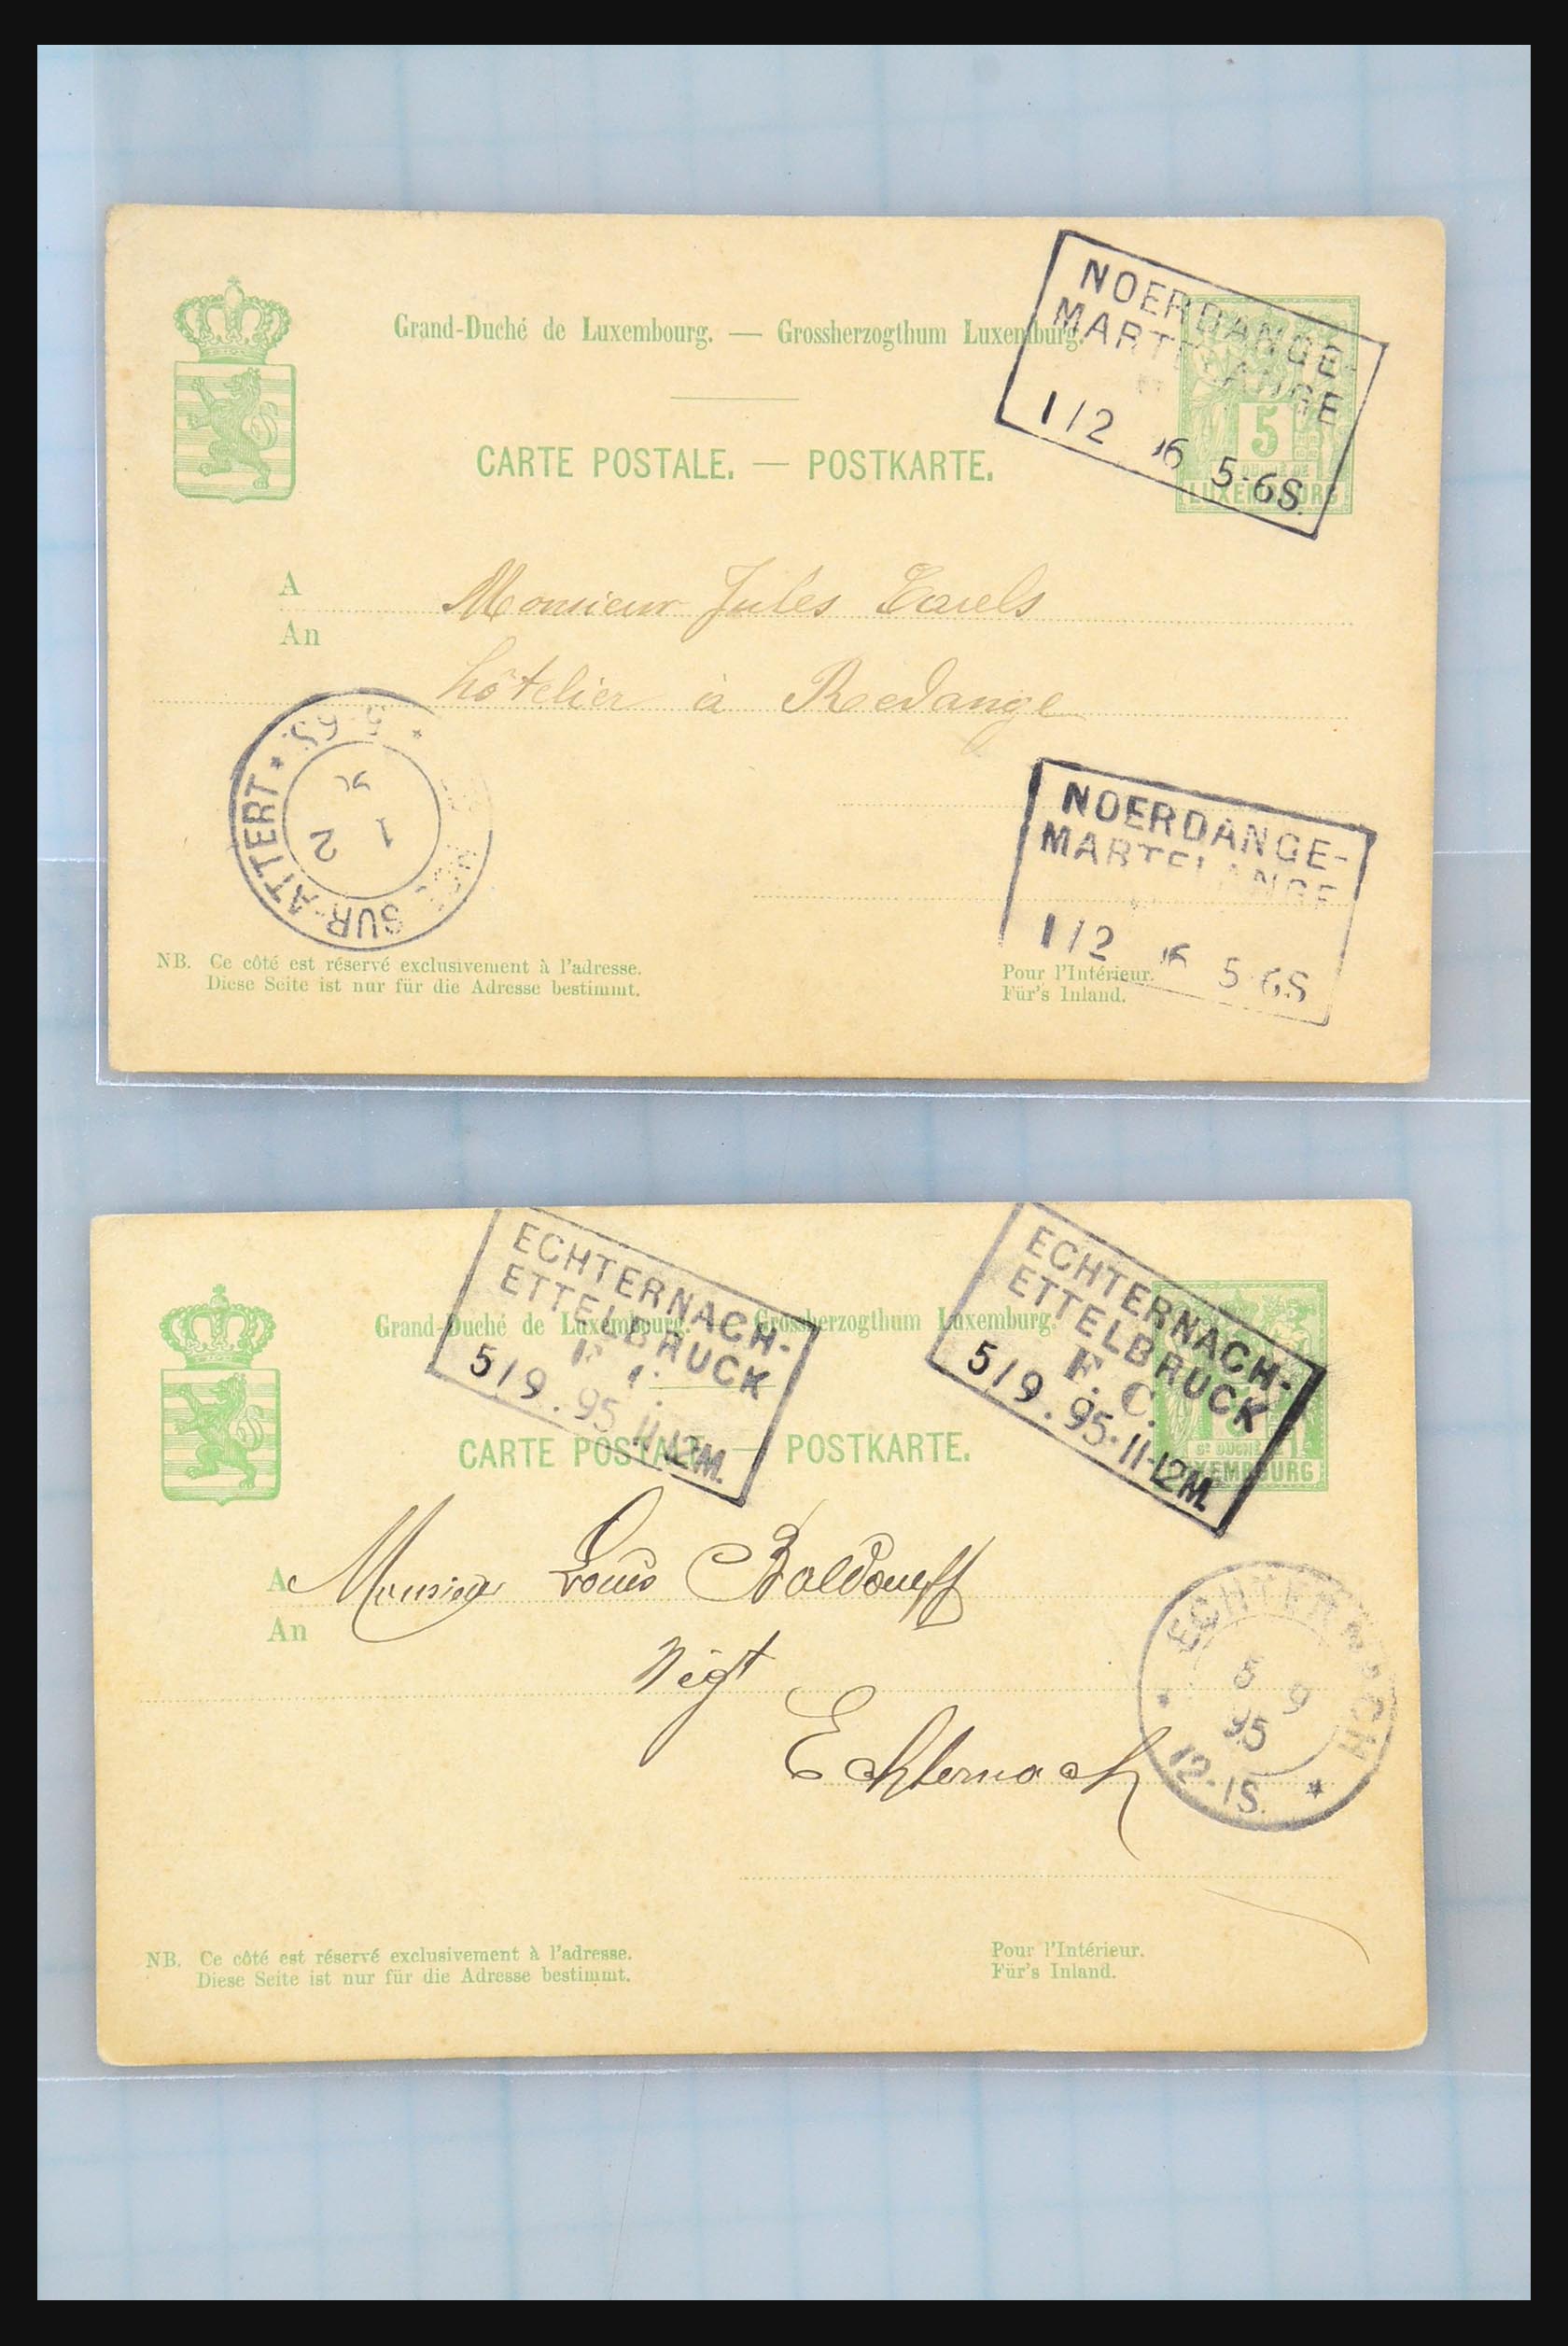 31358 106 - 31358 Portugal/Luxemburg/Griekenland brieven 1880-1960.